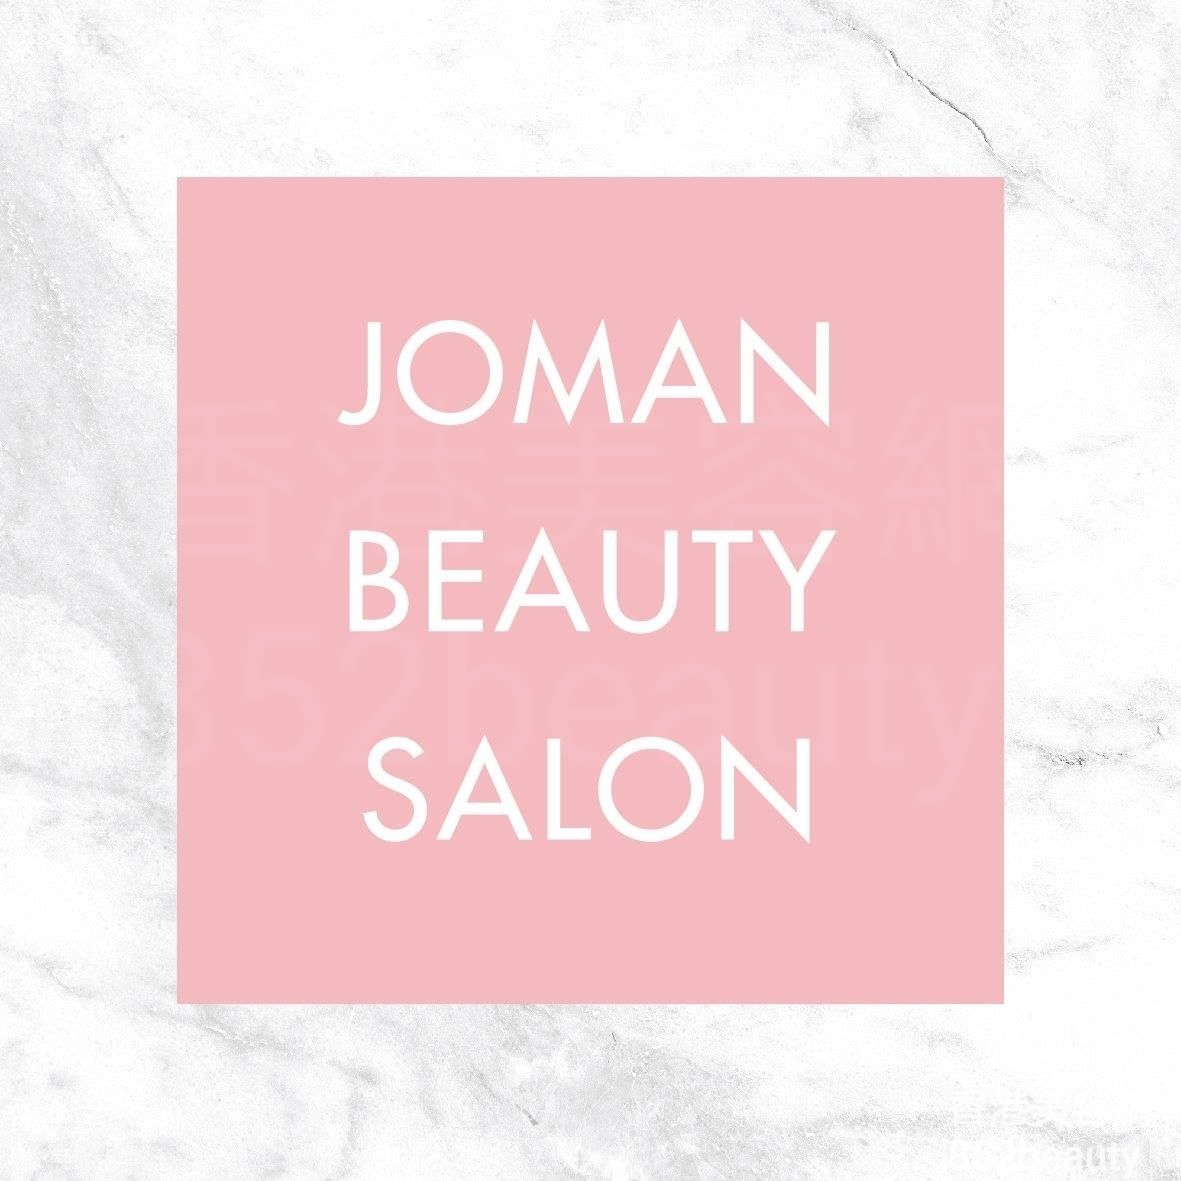 香港美容網 Hong Kong Beauty Salon 美容院 / 美容師: Joman Beauty Salon